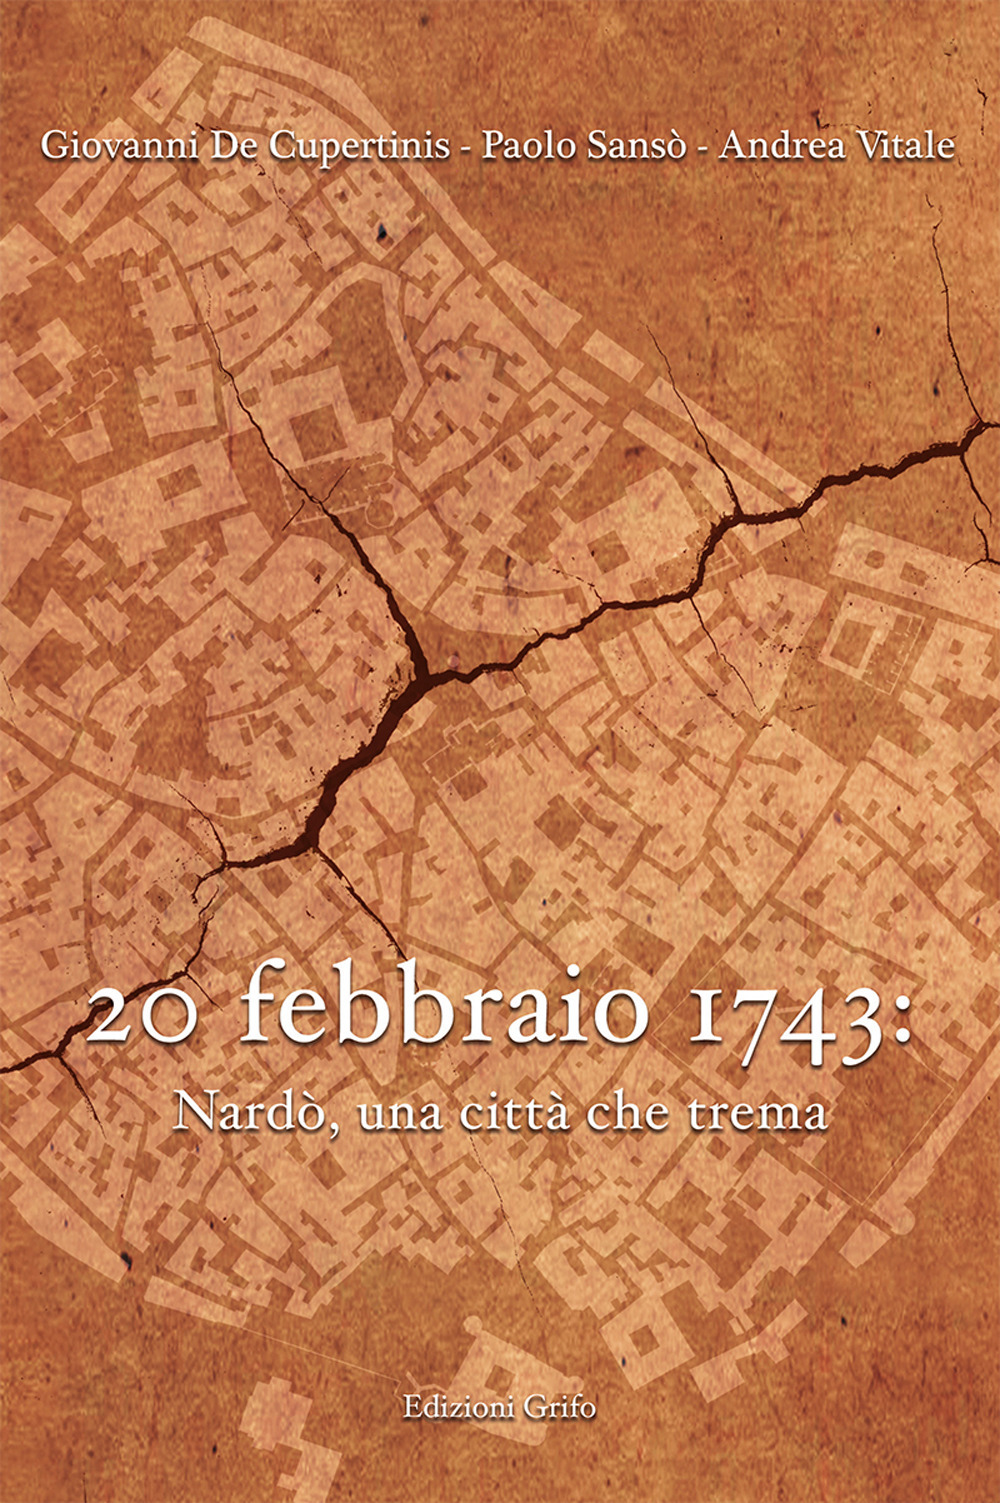 20 febbraio 1743: Nardò, una città che trema